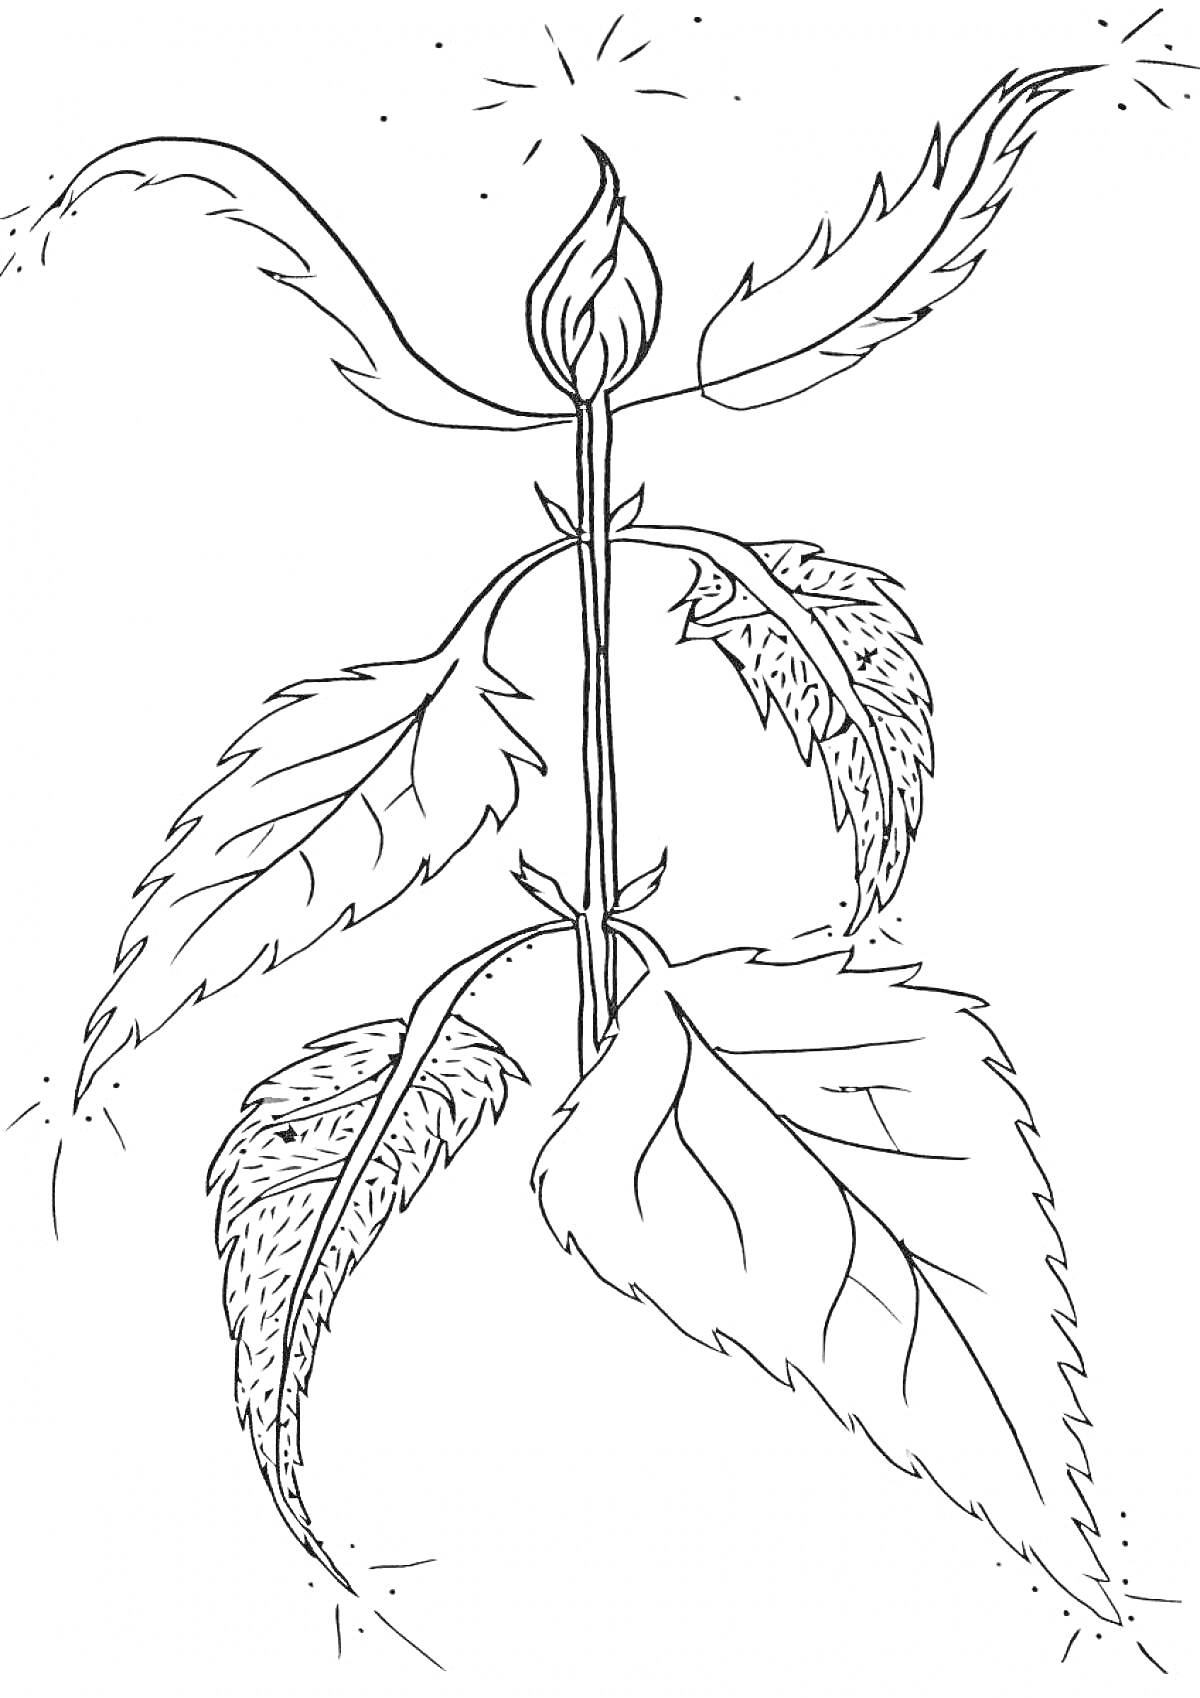 Раскраска Рисунок крапивы с листьями и стеблем.